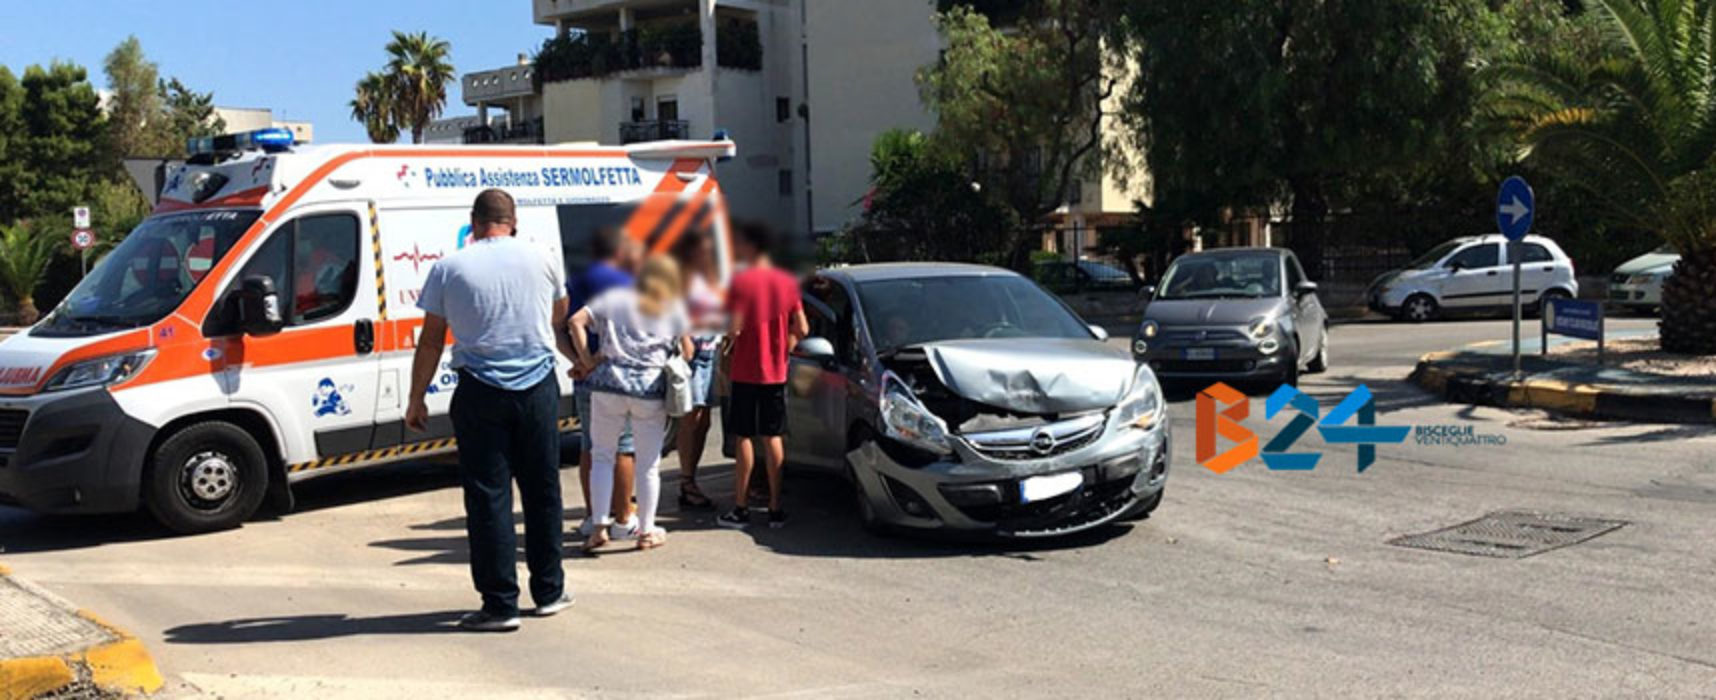 Scontro tra due auto in zona Sant’Andrea, 18enne trasportata in ospedale